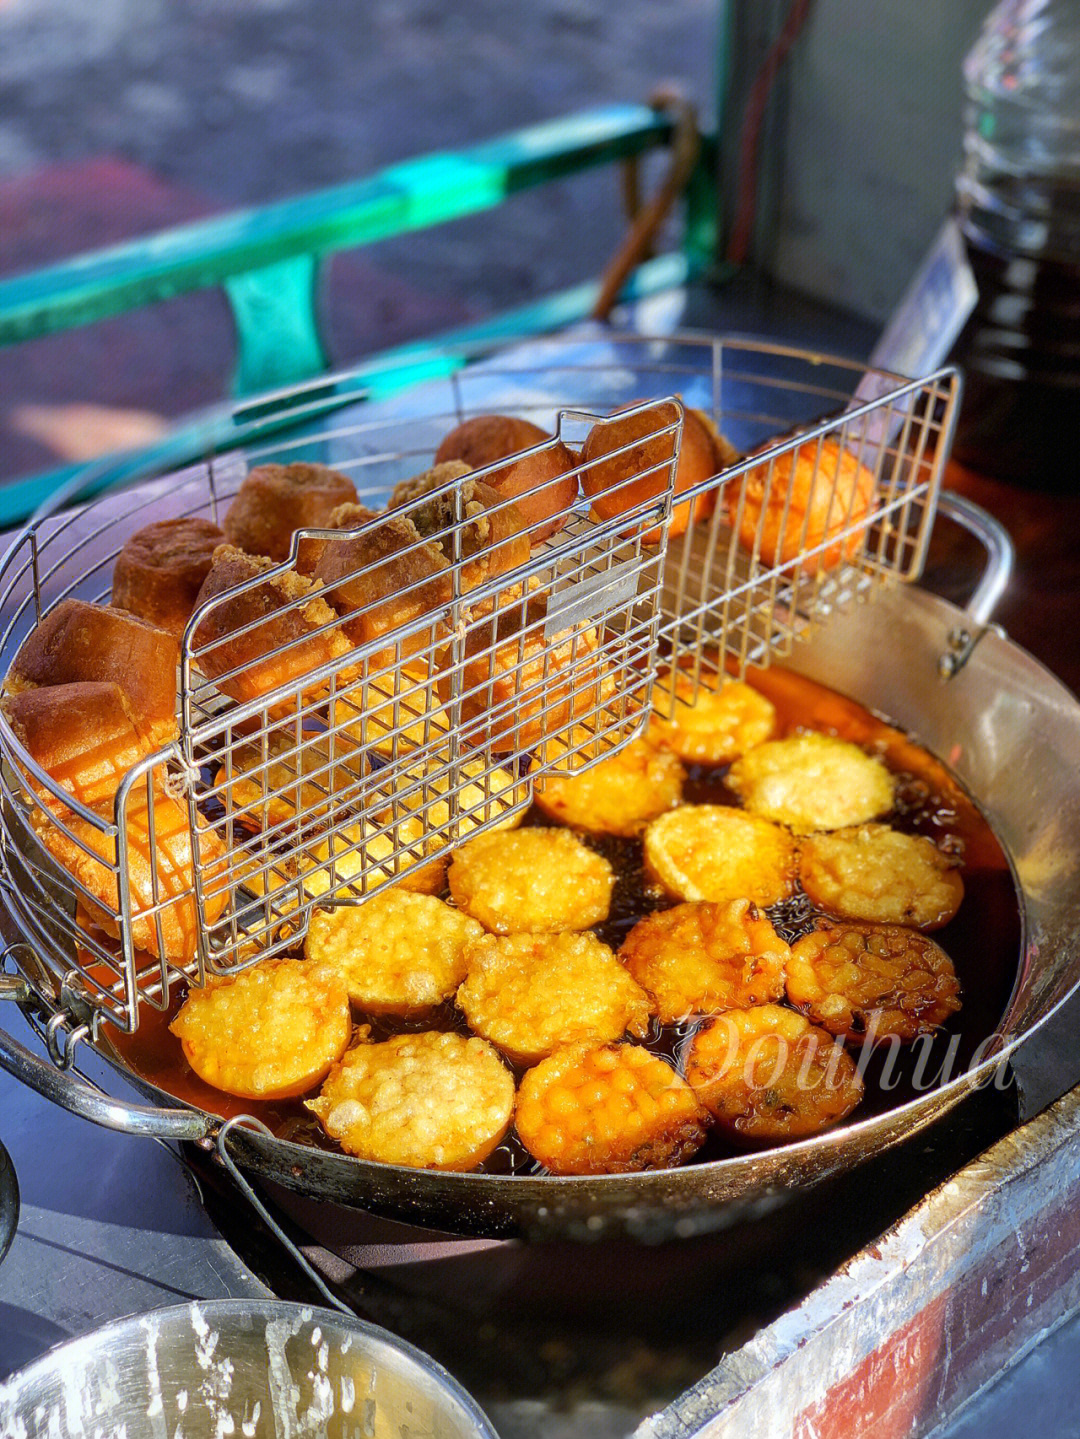 汕尾油炸粿图片